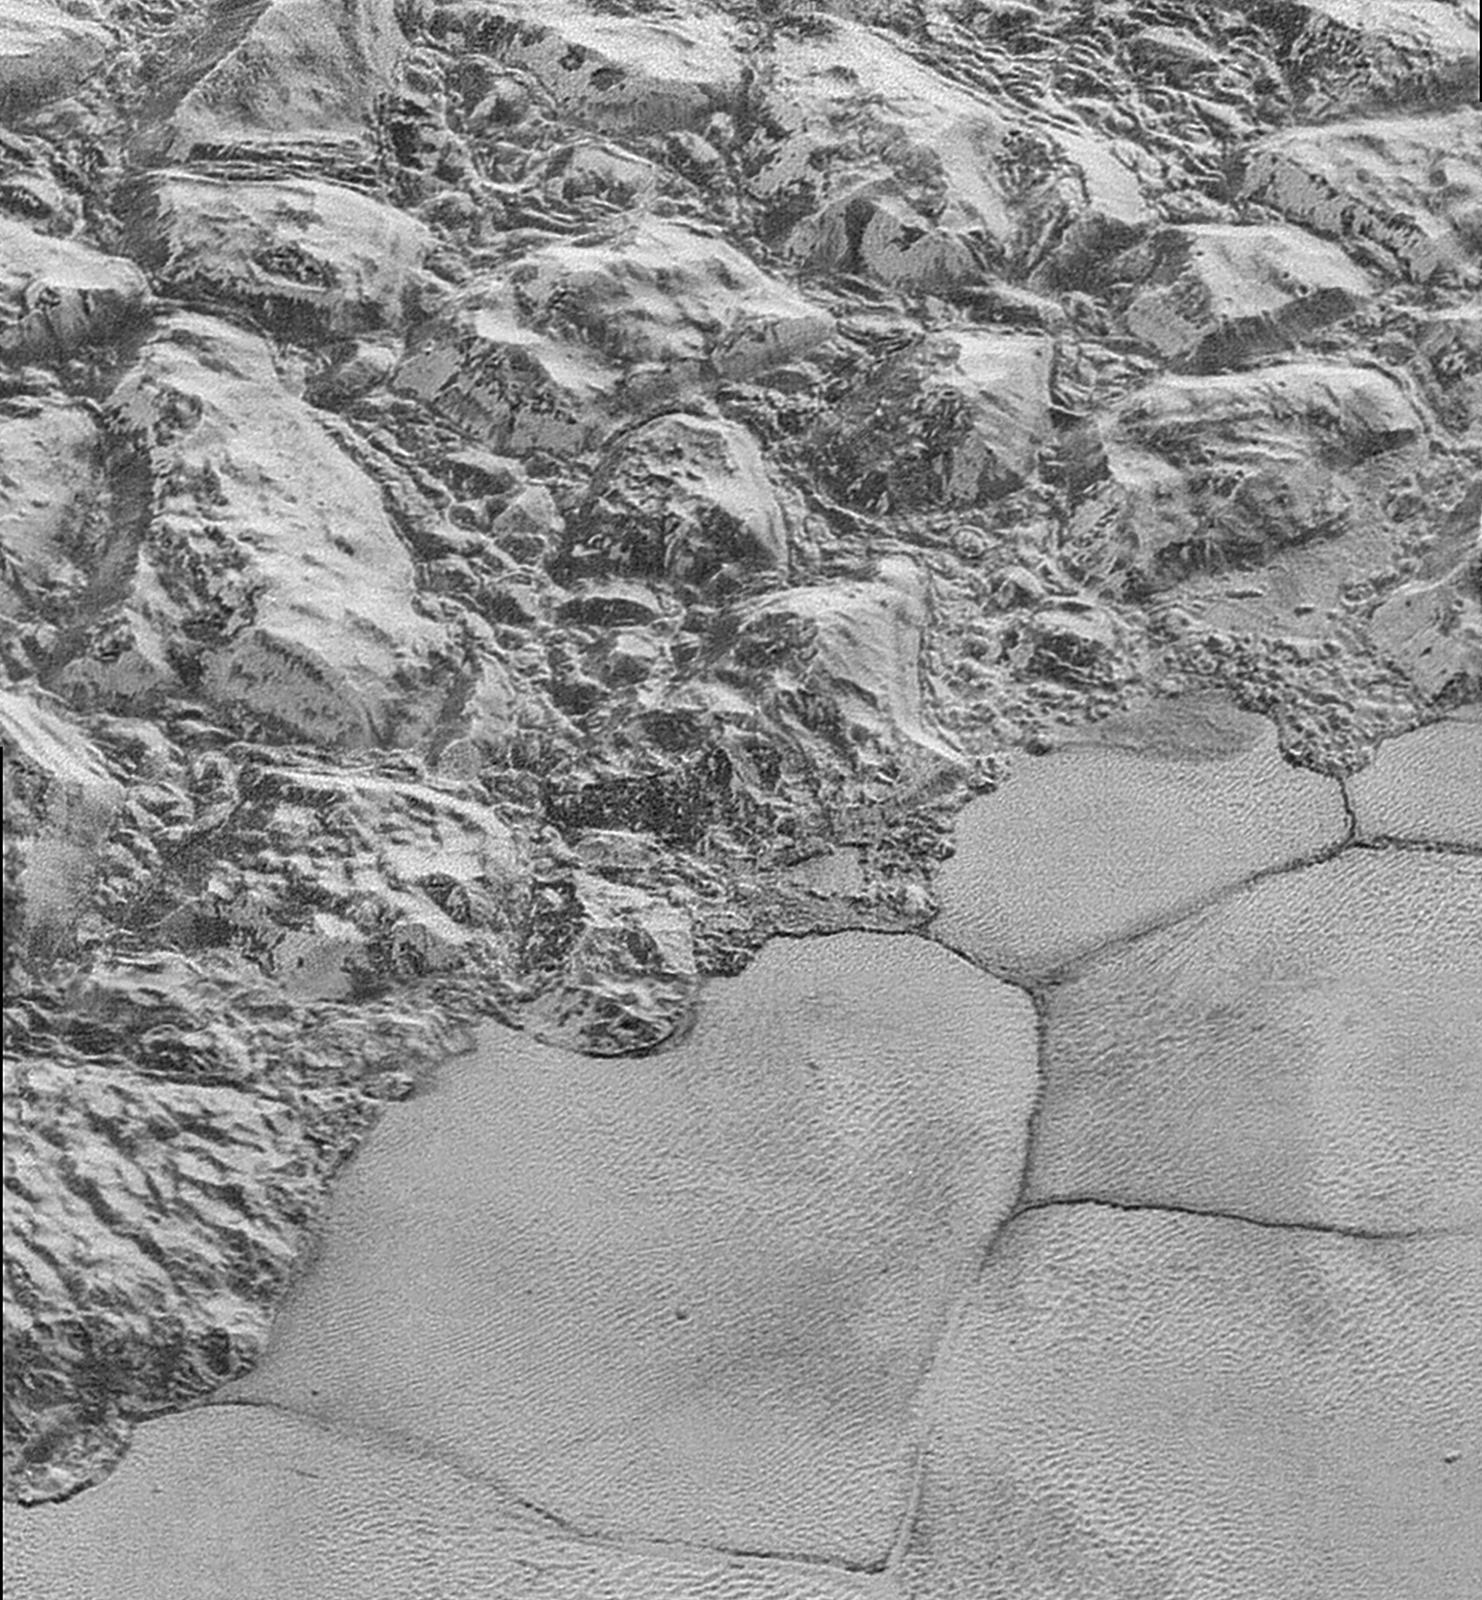 Les dernières images de Pluton… d’encore plus près (vidéo)